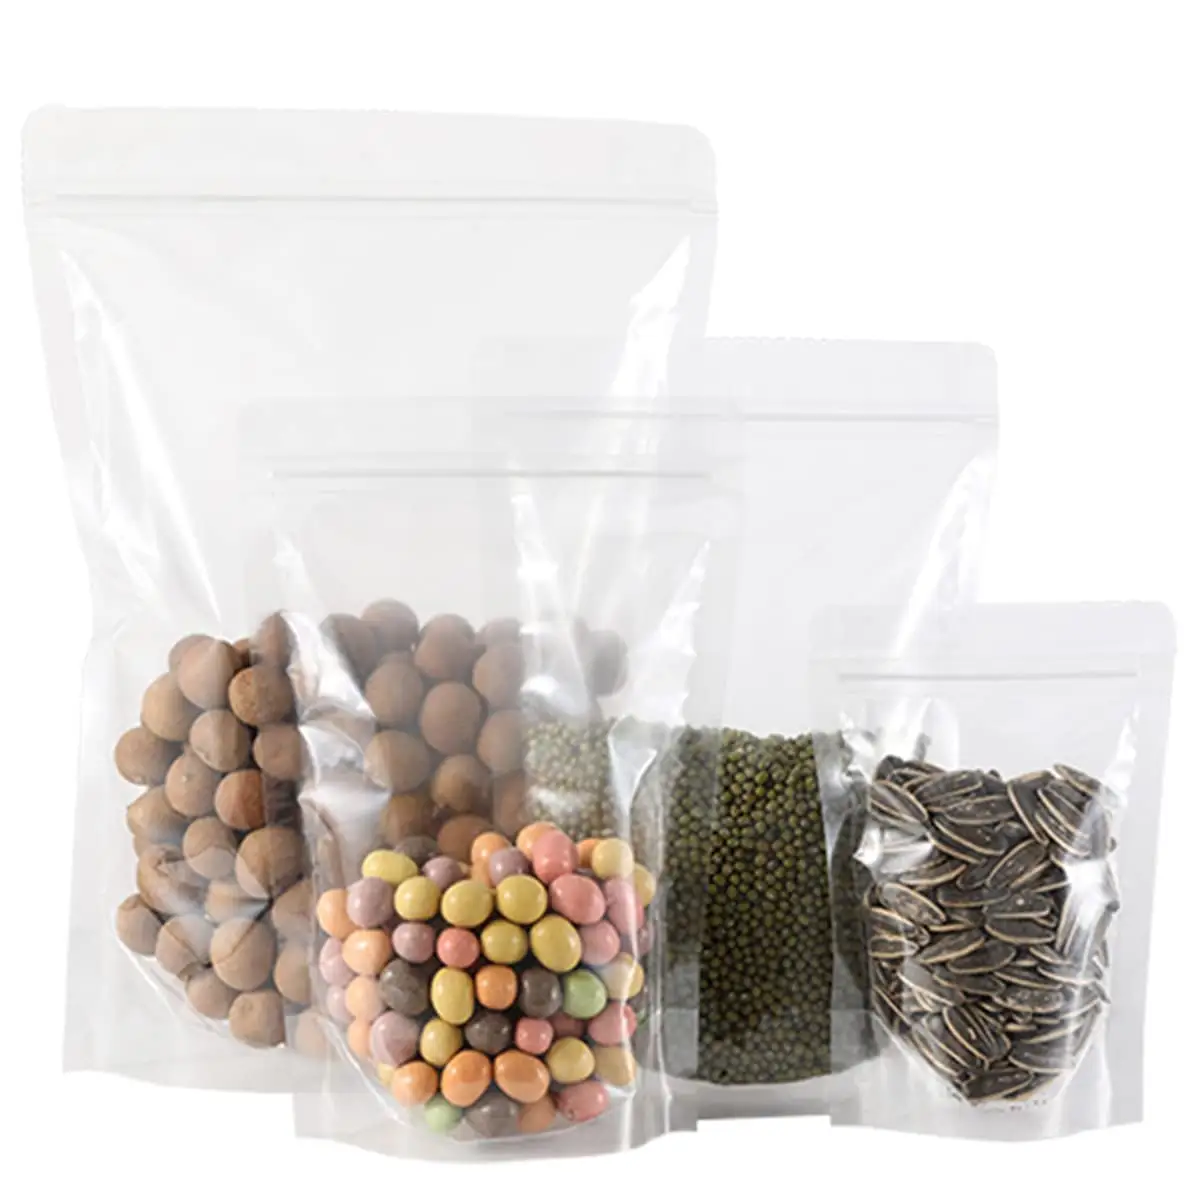 Sacos de plástico ziplock biodegradáveis para embalagens de alimentos, venda imperdível